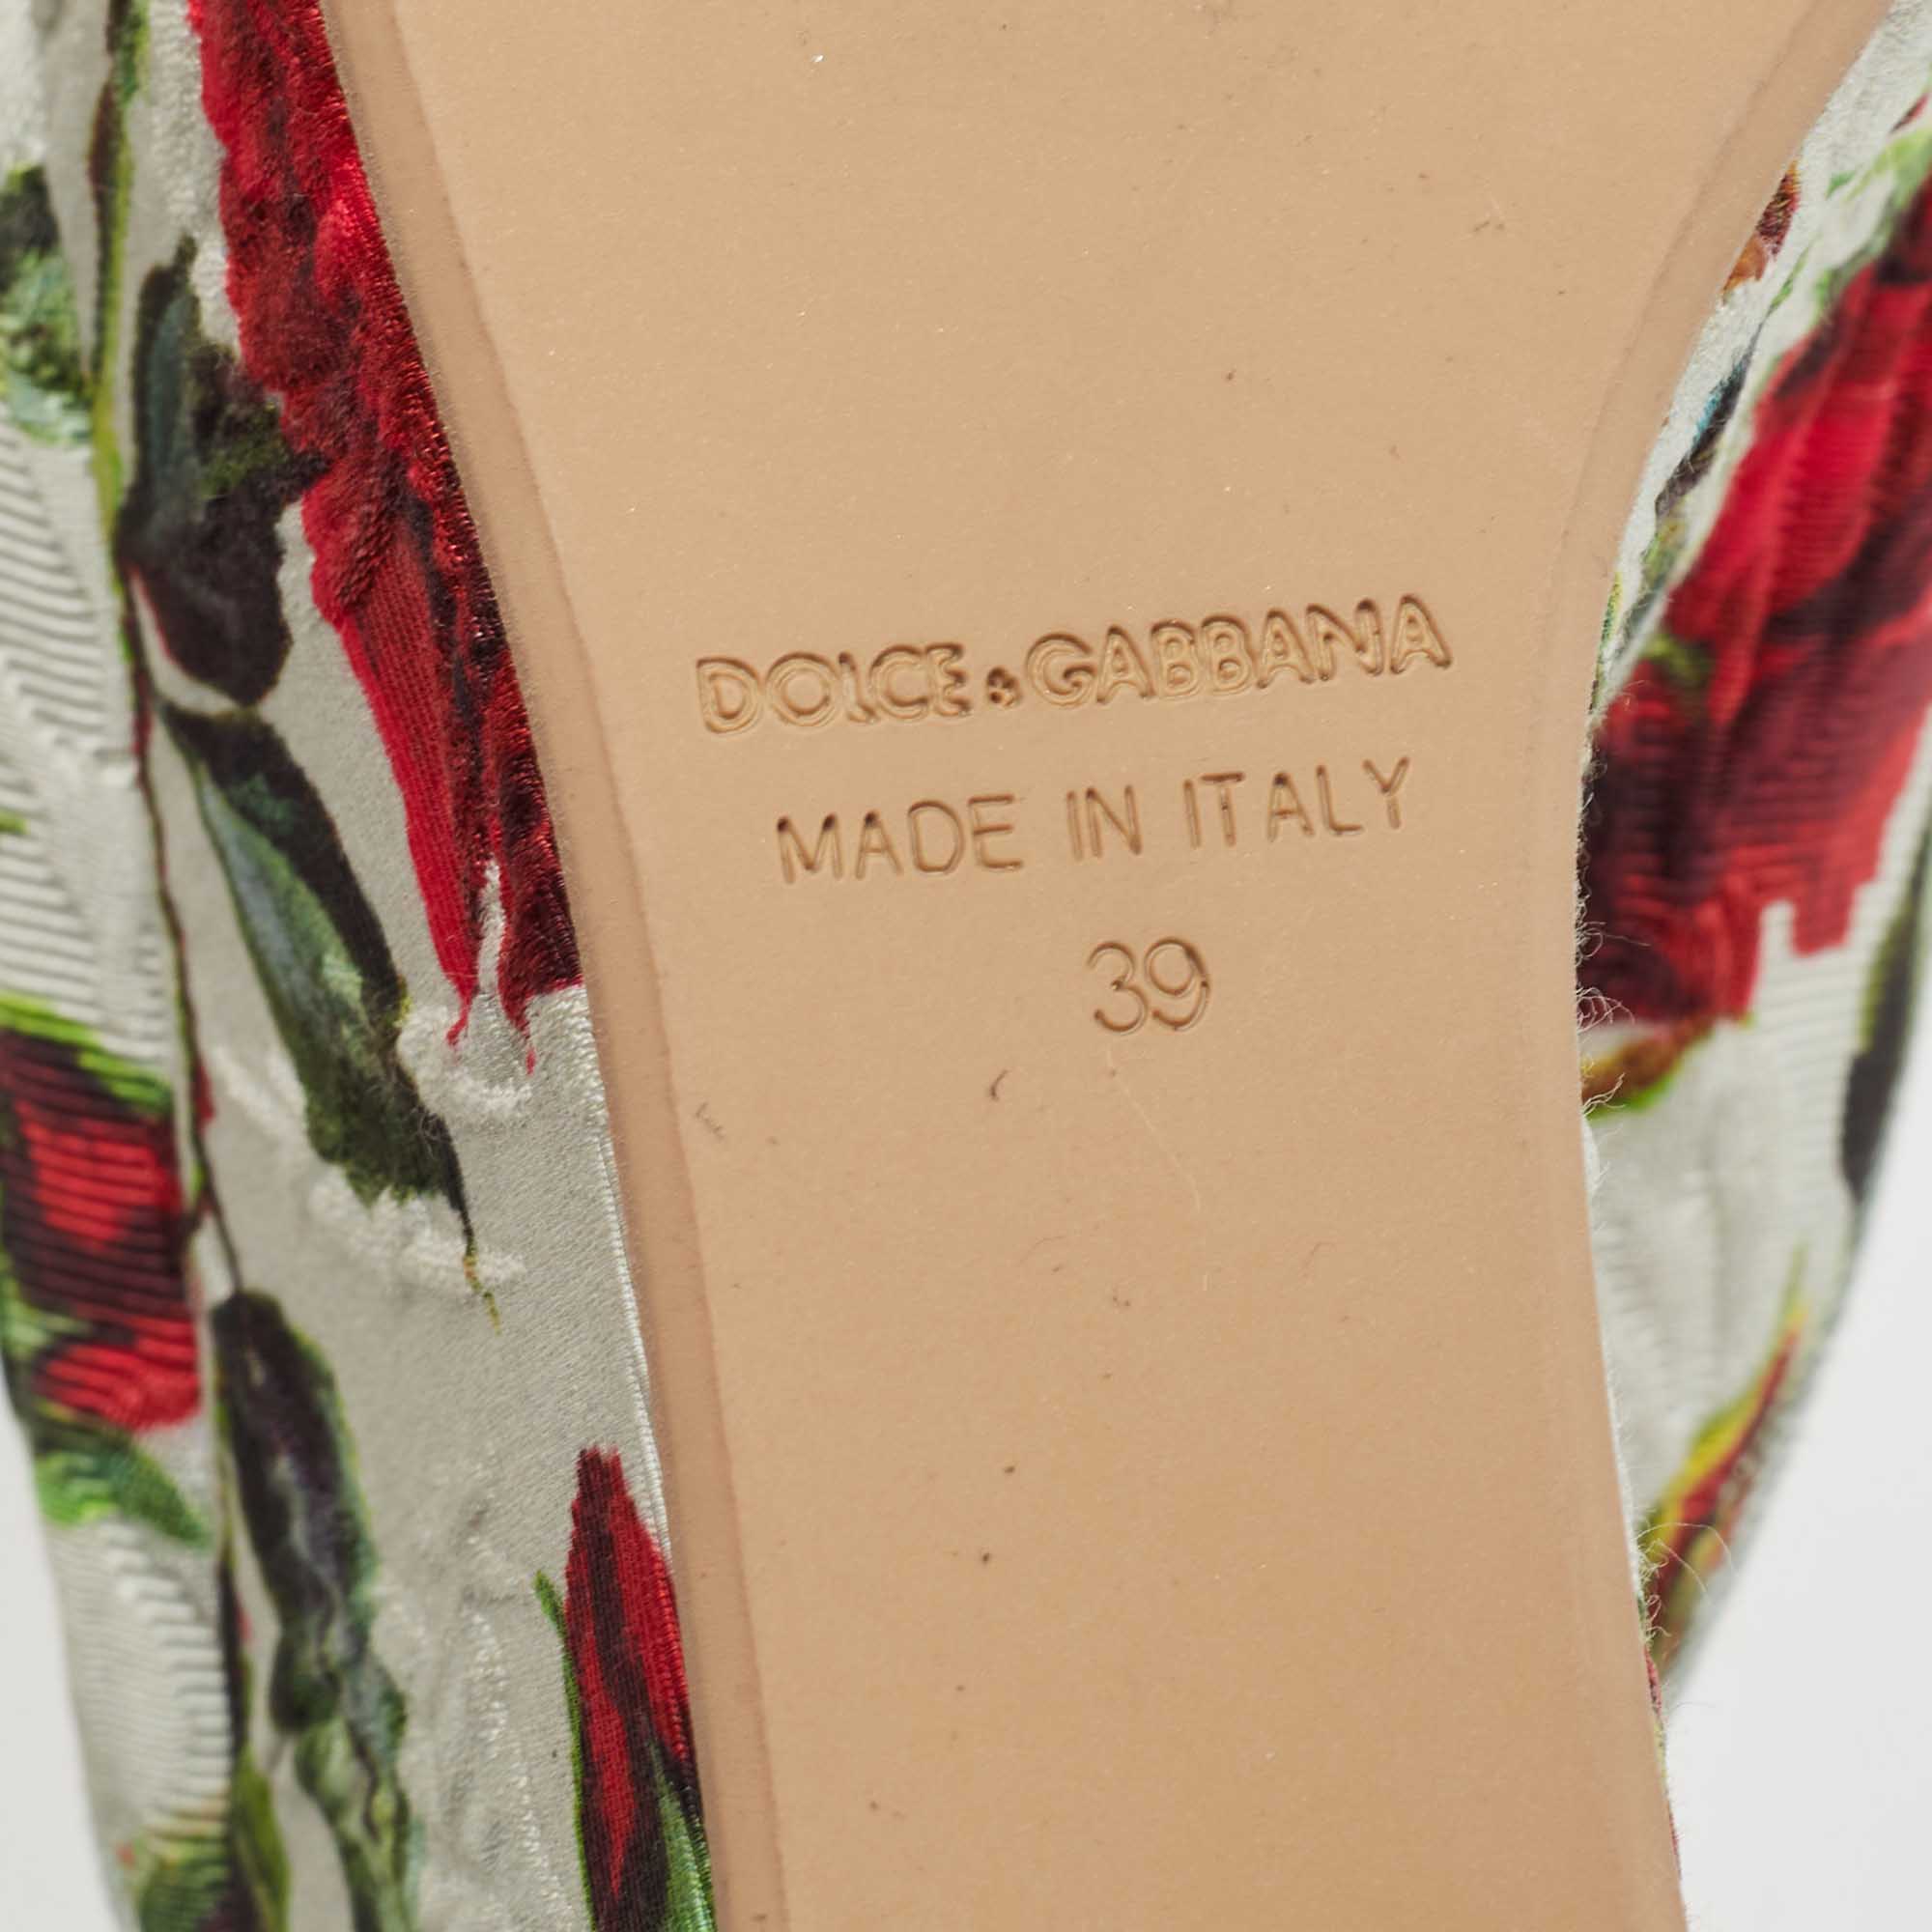 Dolce & Gabbana Light Green Rose Print Canvas Embellished Flower Applique Wedge Slide Sandals Size 39